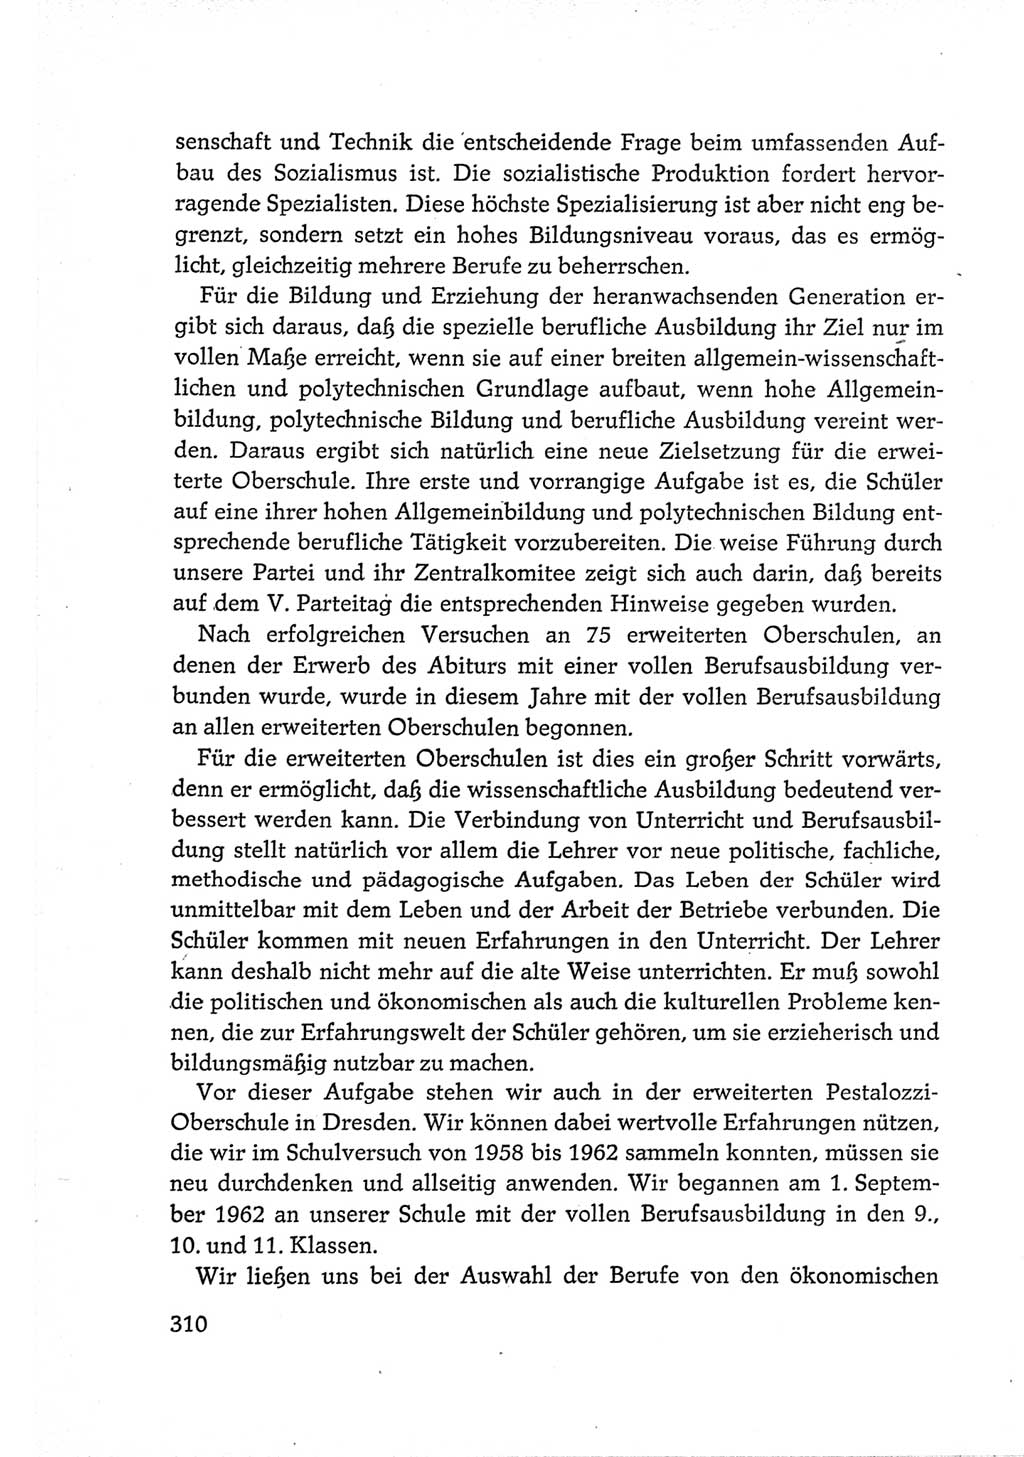 Protokoll der Verhandlungen des Ⅵ. Parteitages der Sozialistischen Einheitspartei Deutschlands (SED) [Deutsche Demokratische Republik (DDR)] 1963, Band Ⅲ, Seite 310 (Prot. Verh. Ⅵ. PT SED DDR 1963, Bd. Ⅲ, S. 310)